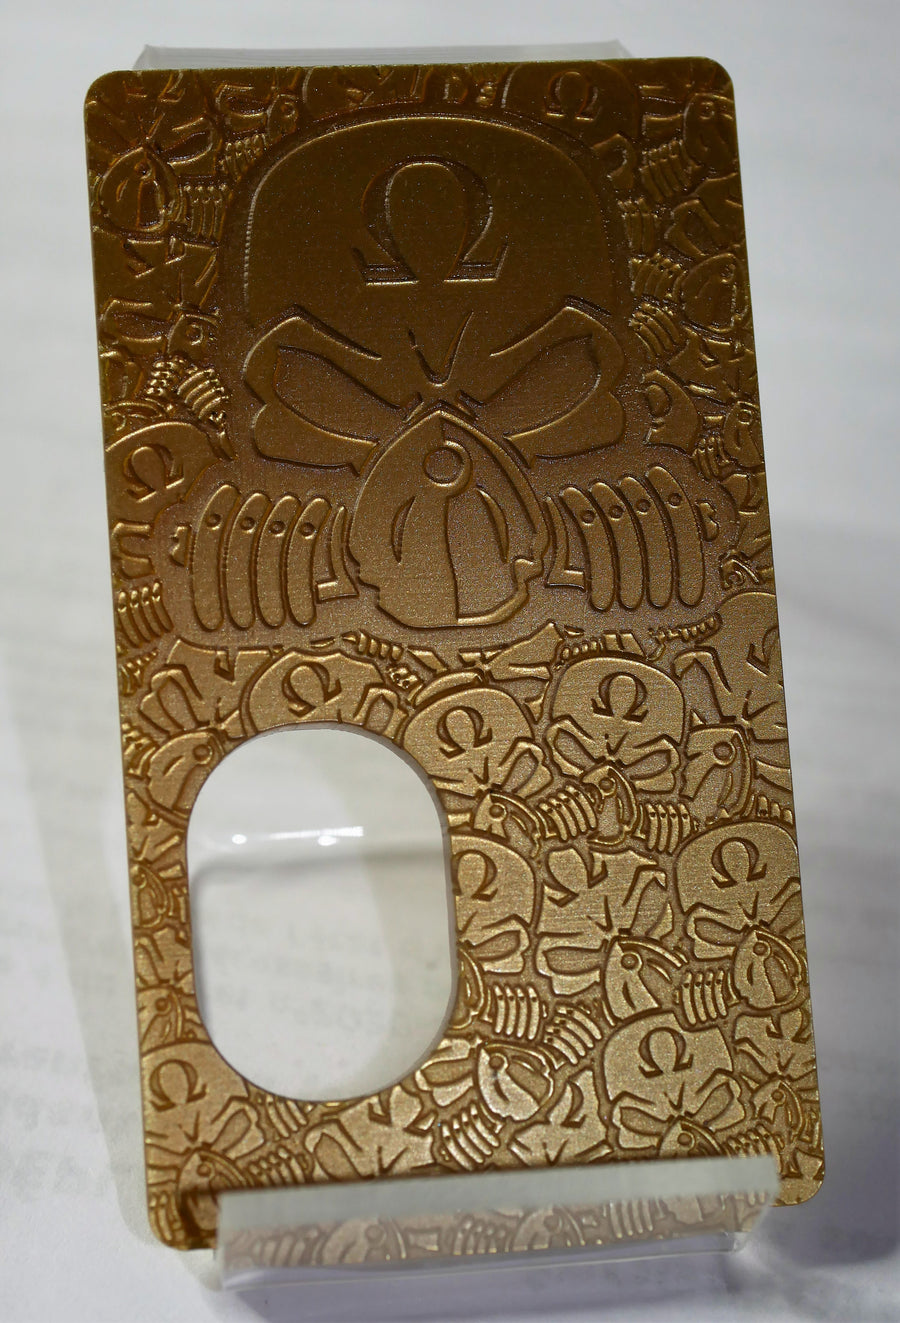 Engraved SvF V4 Mod Panel - Gold SvF Central Head - Porte gravée